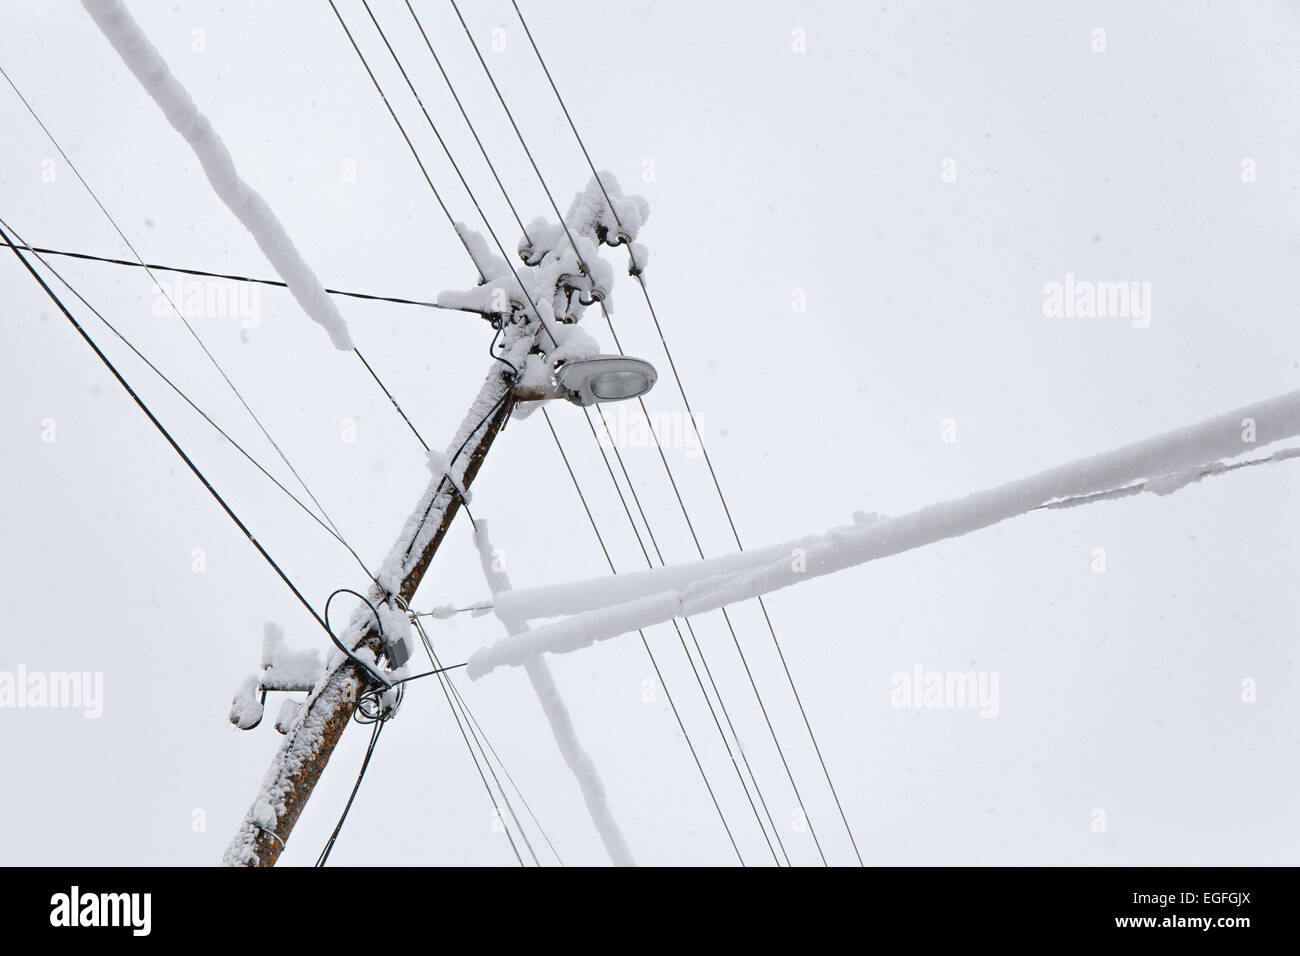 La caída de nieve sobre un poste eléctrico congelada en un frío día de invierno. Foto de stock